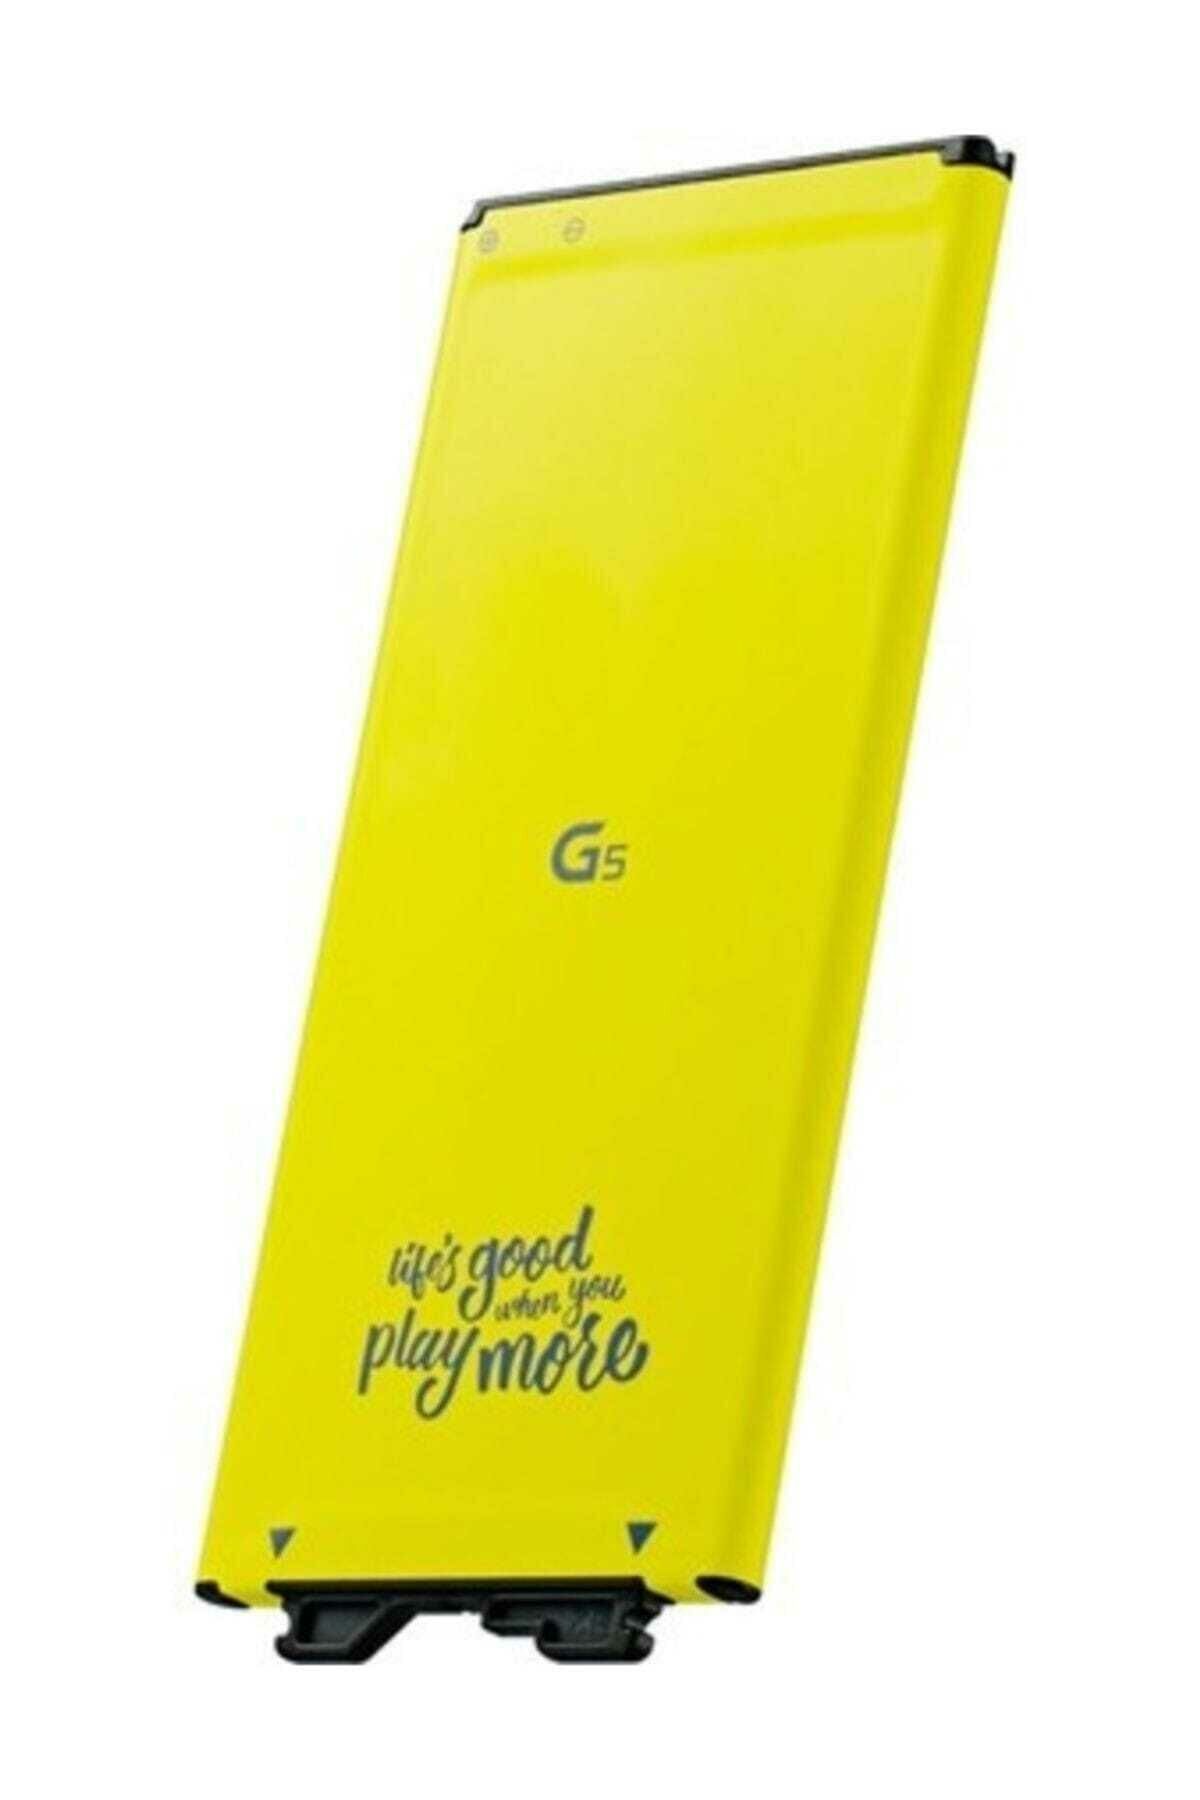 LG CEP TEL BATARYA LG G5